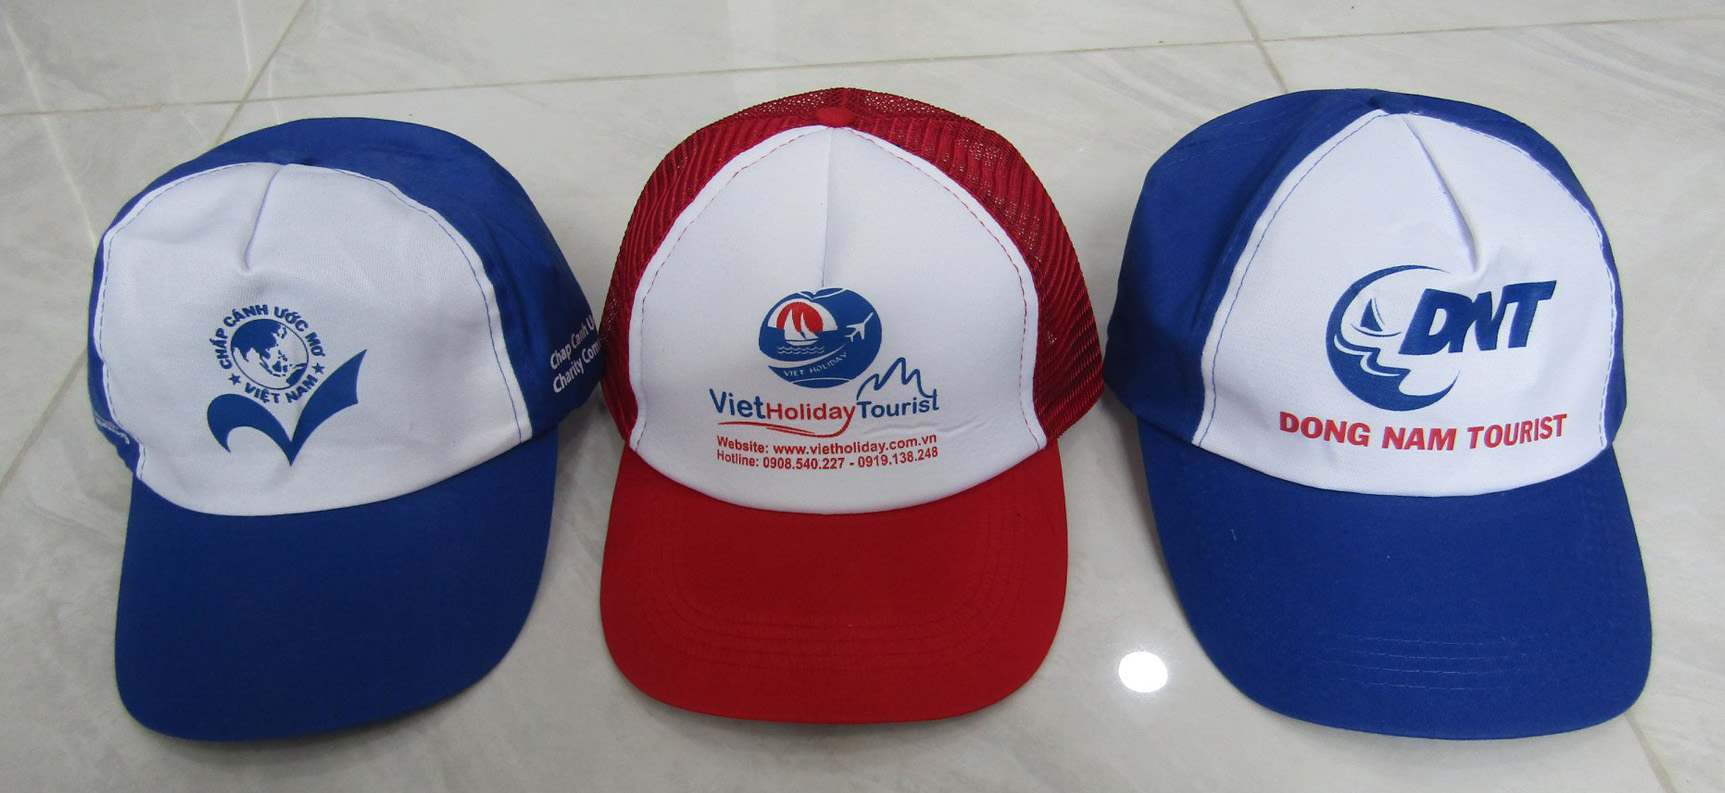 Nón Du Lịch là các loại nón được các công ty lữ hàng du lịch đặt hàng số lượng lớn cho khách của mình. Nón được đặt hàng tại Xưởng May nón của chúng tôi.